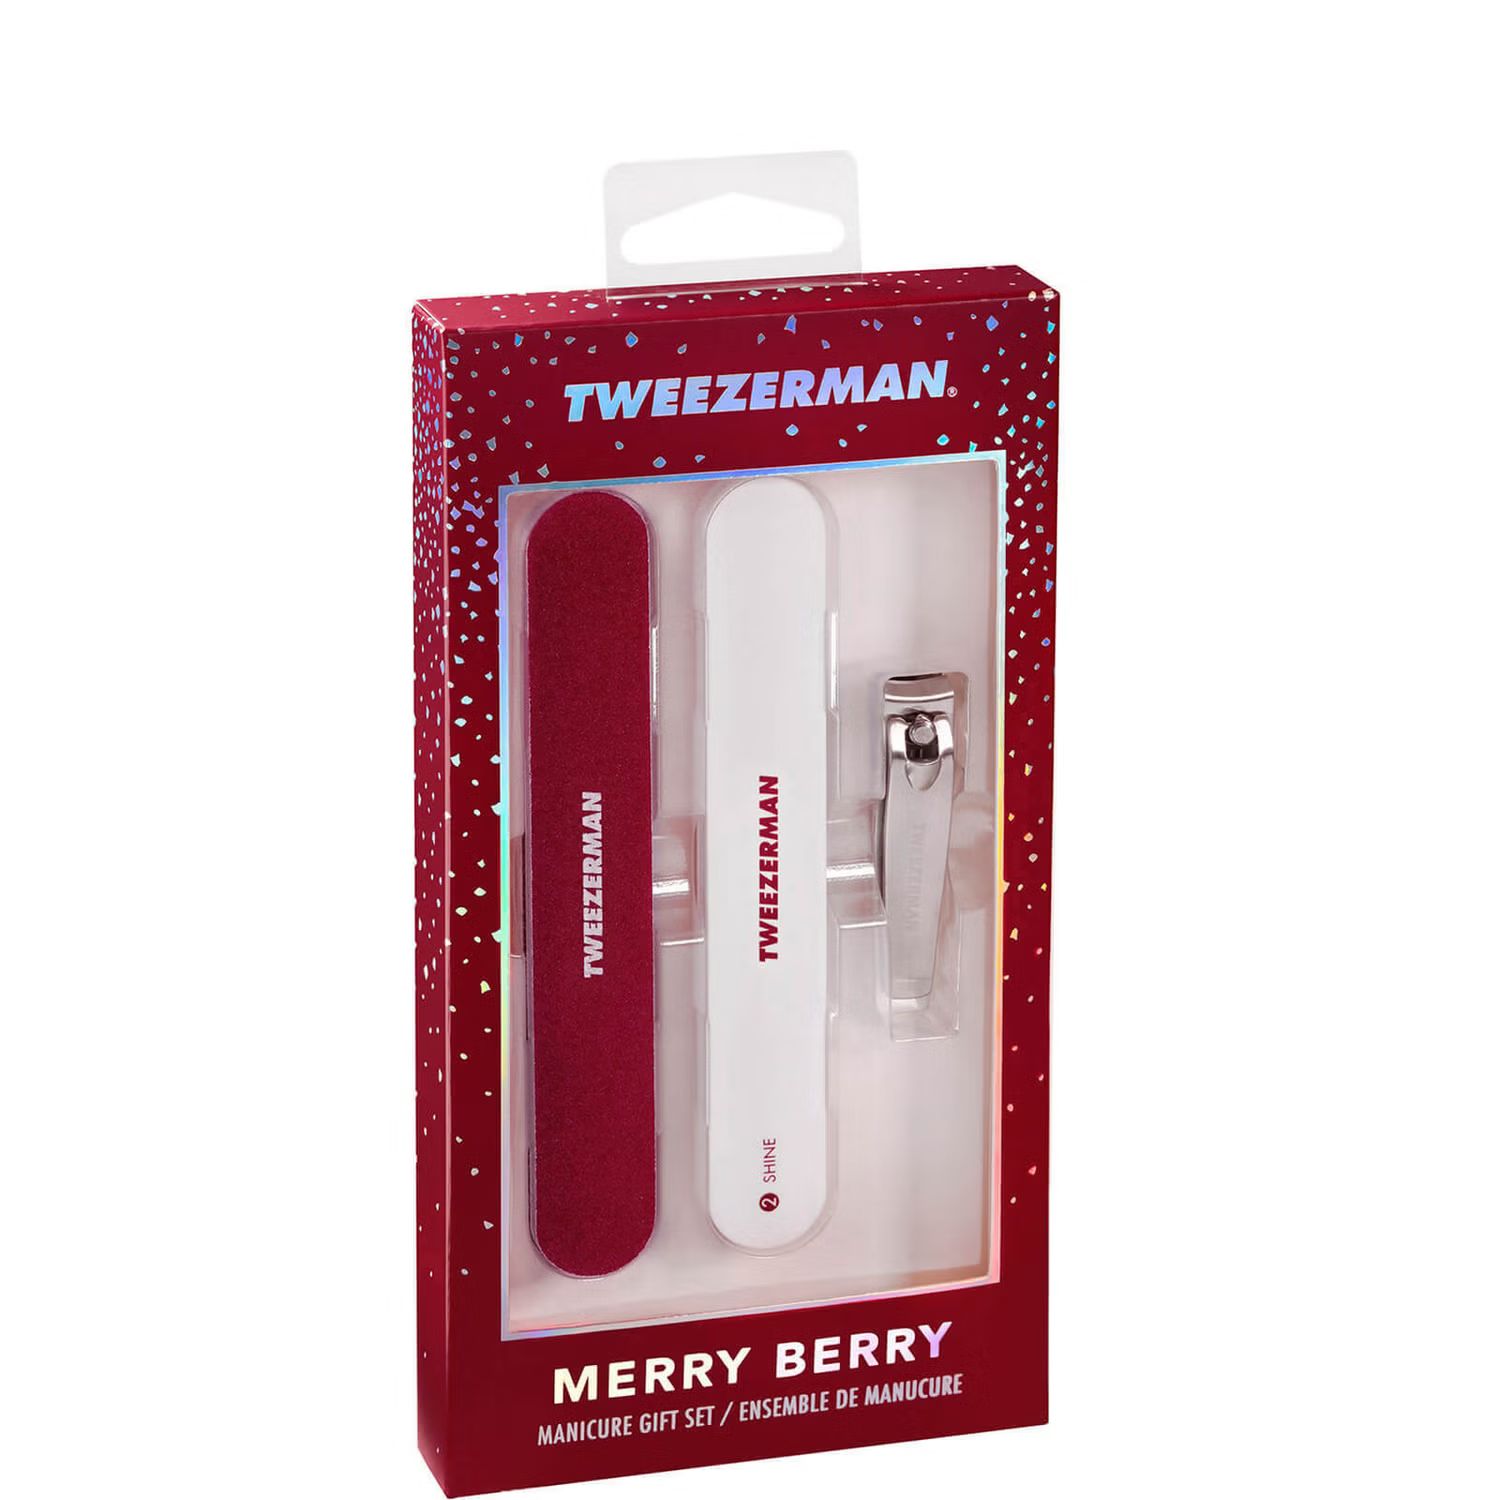 Tweezerman Merry Berry Manicure Gift Set (£22.00) | Look Fantastic (UK)